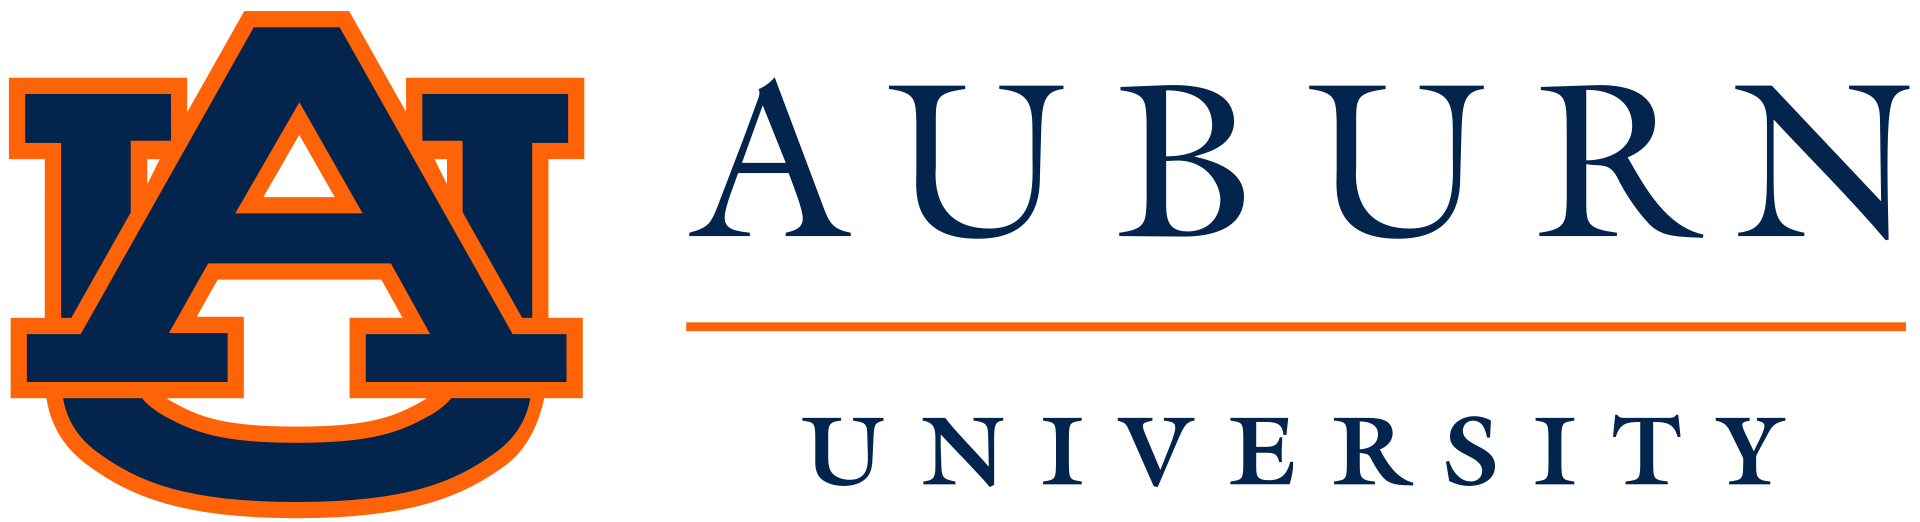 Auburn University - Обернский университет